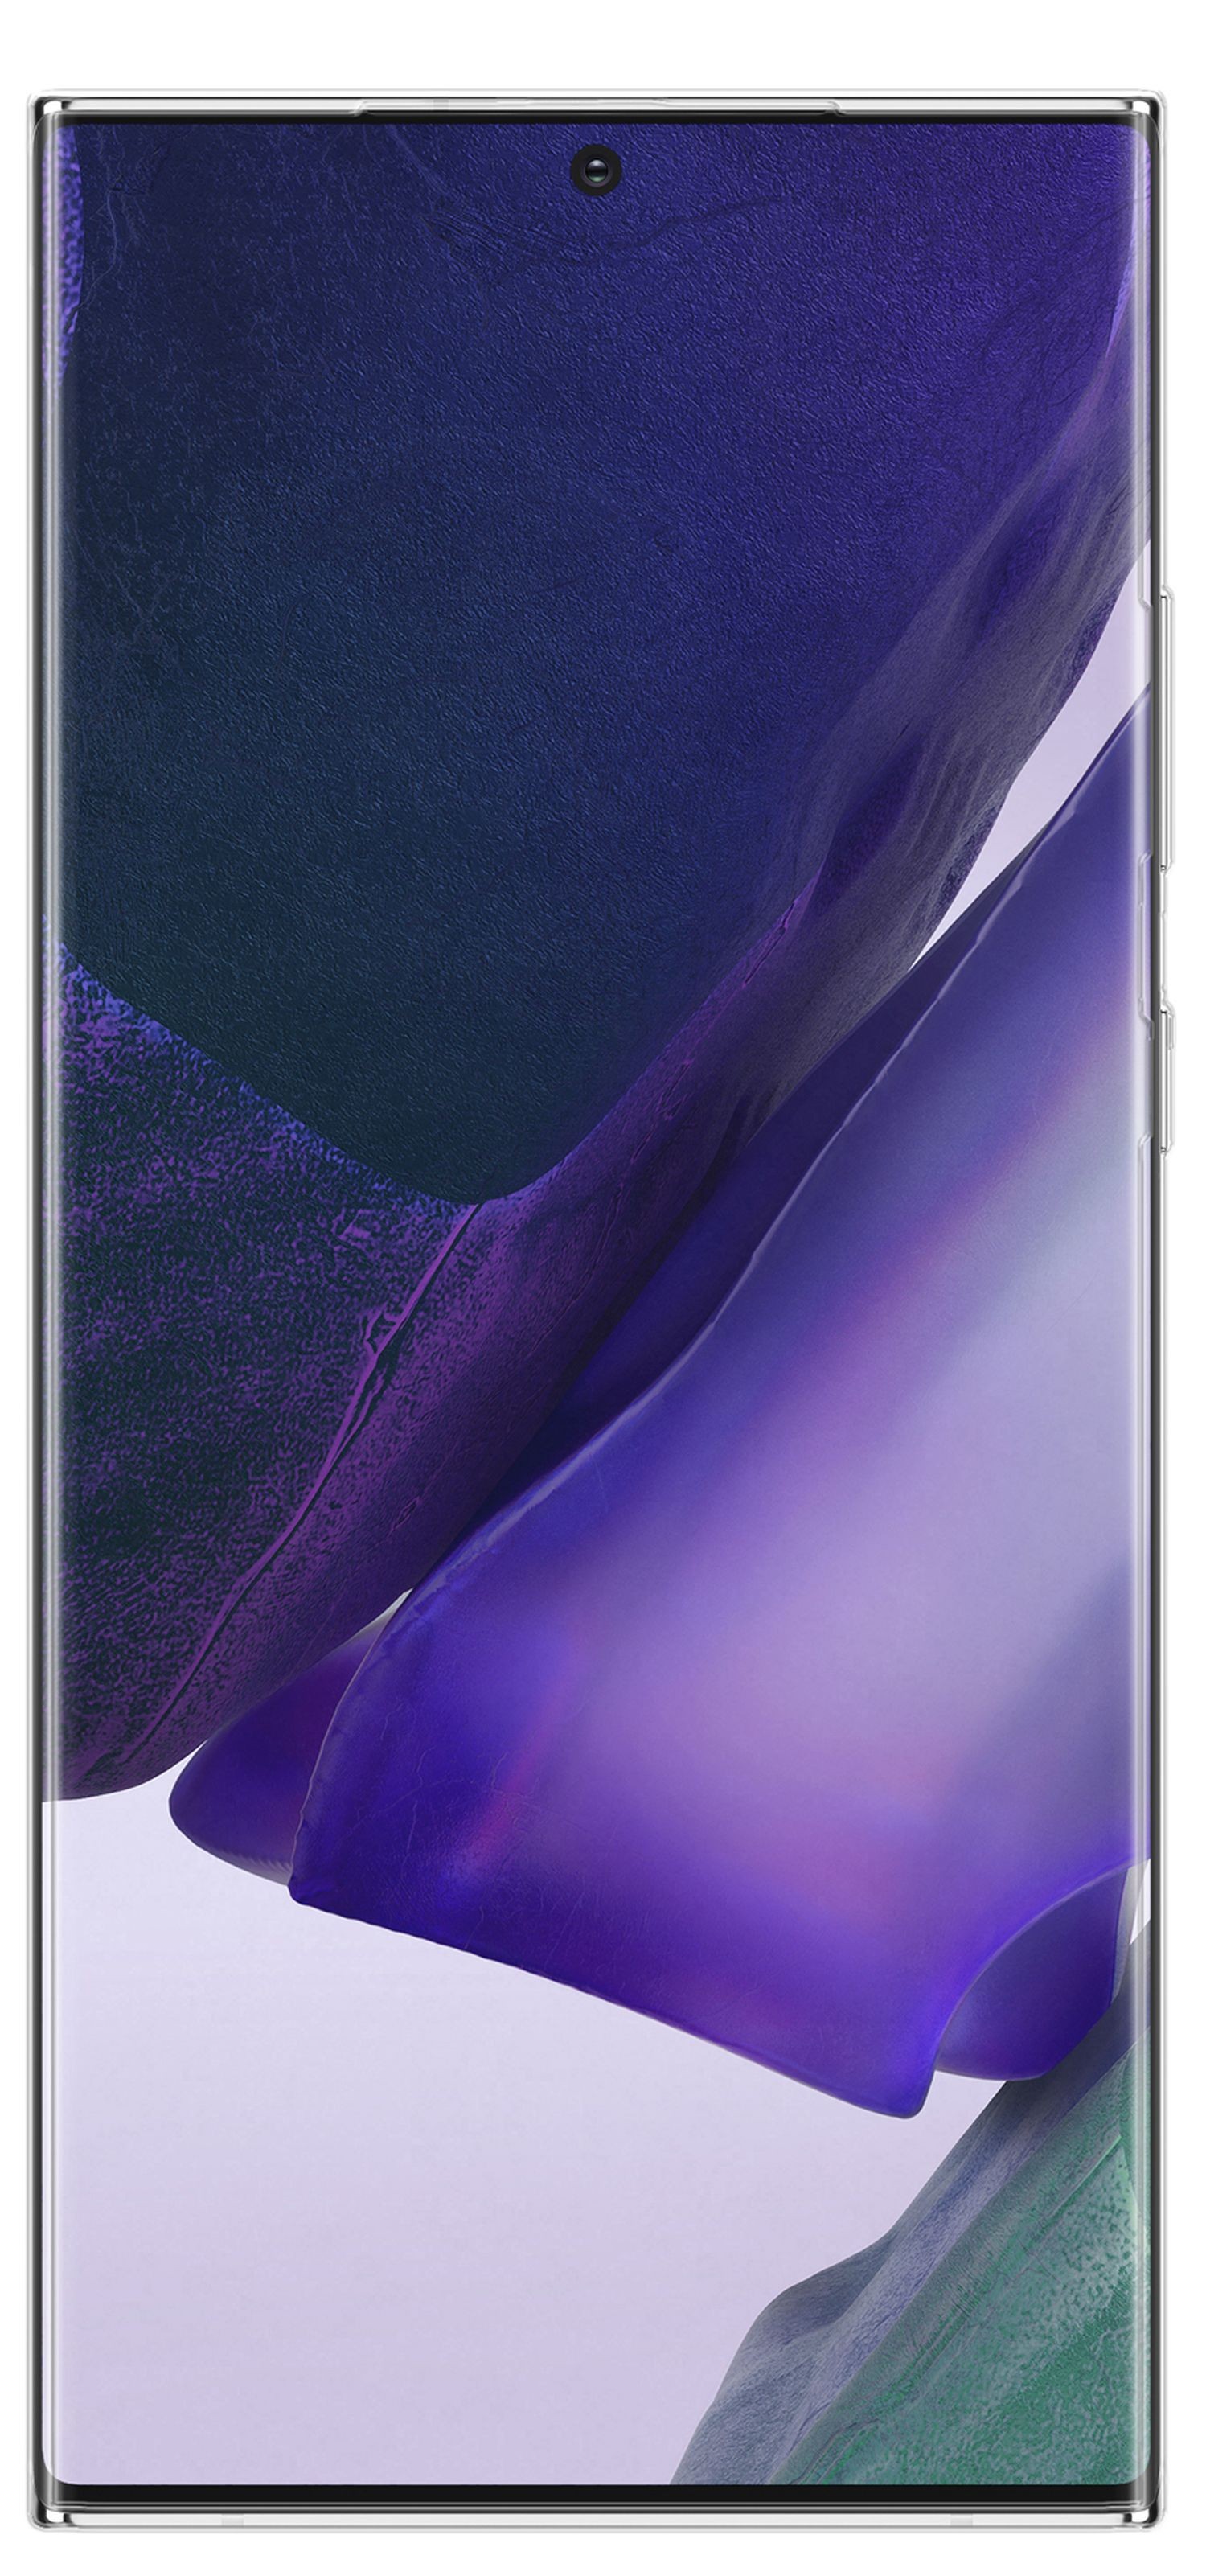 COFI Basic Bumper, Transparent Cover, Galaxy Note 20 Samsung, Ultra